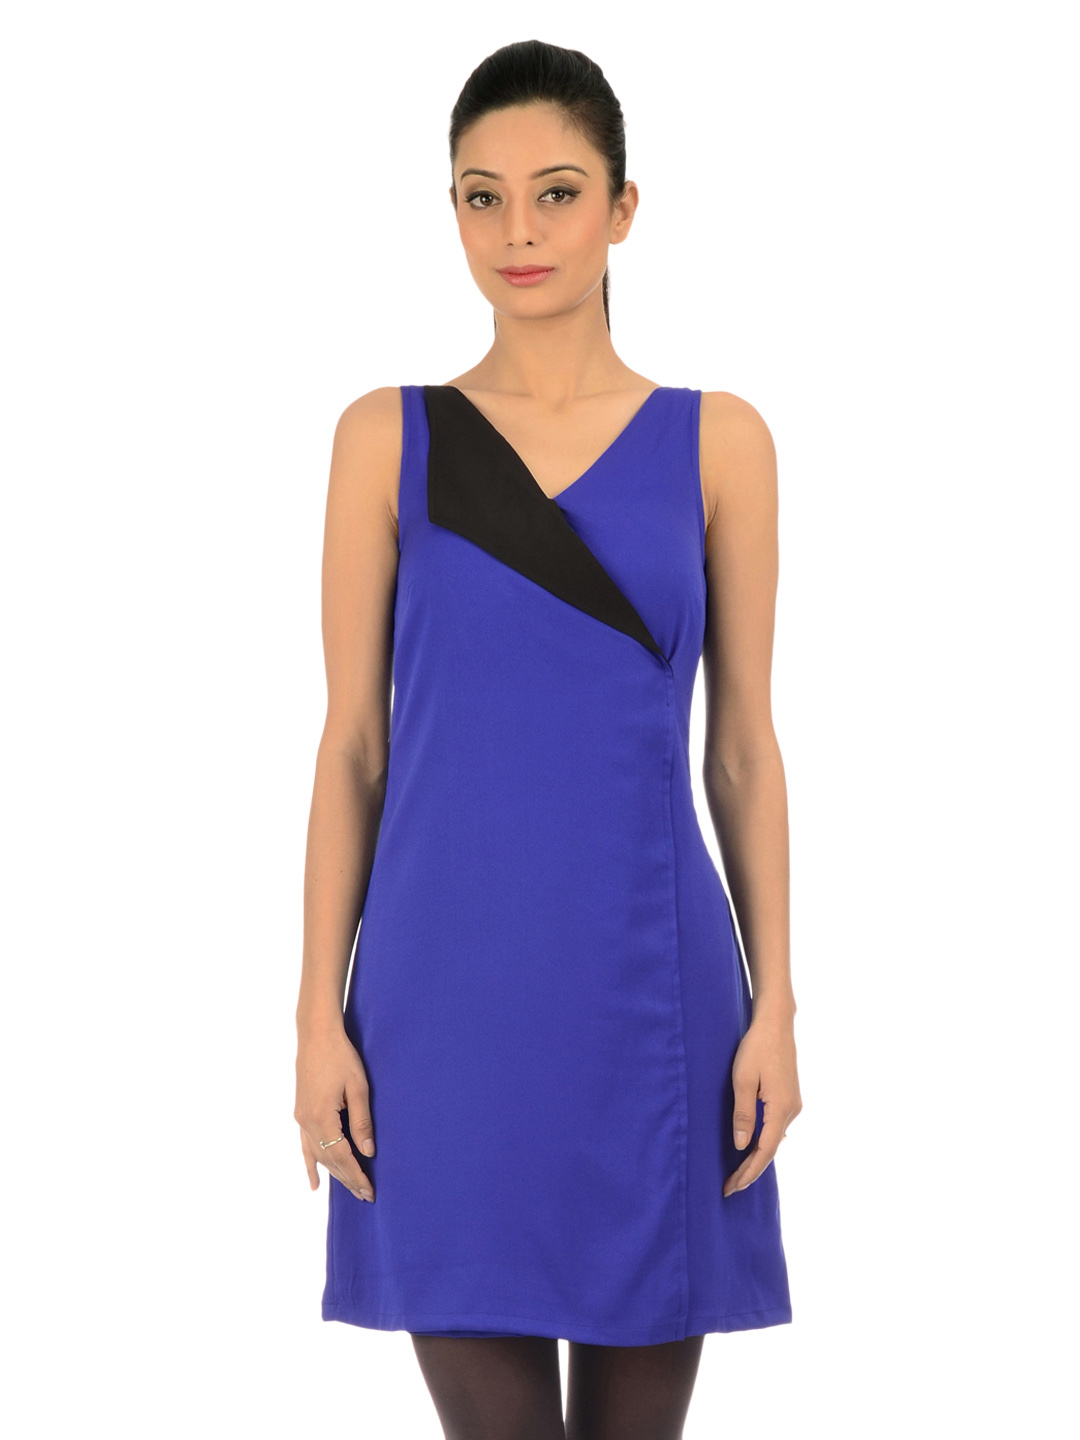 Accessories To Match Cobalt Blue Dress